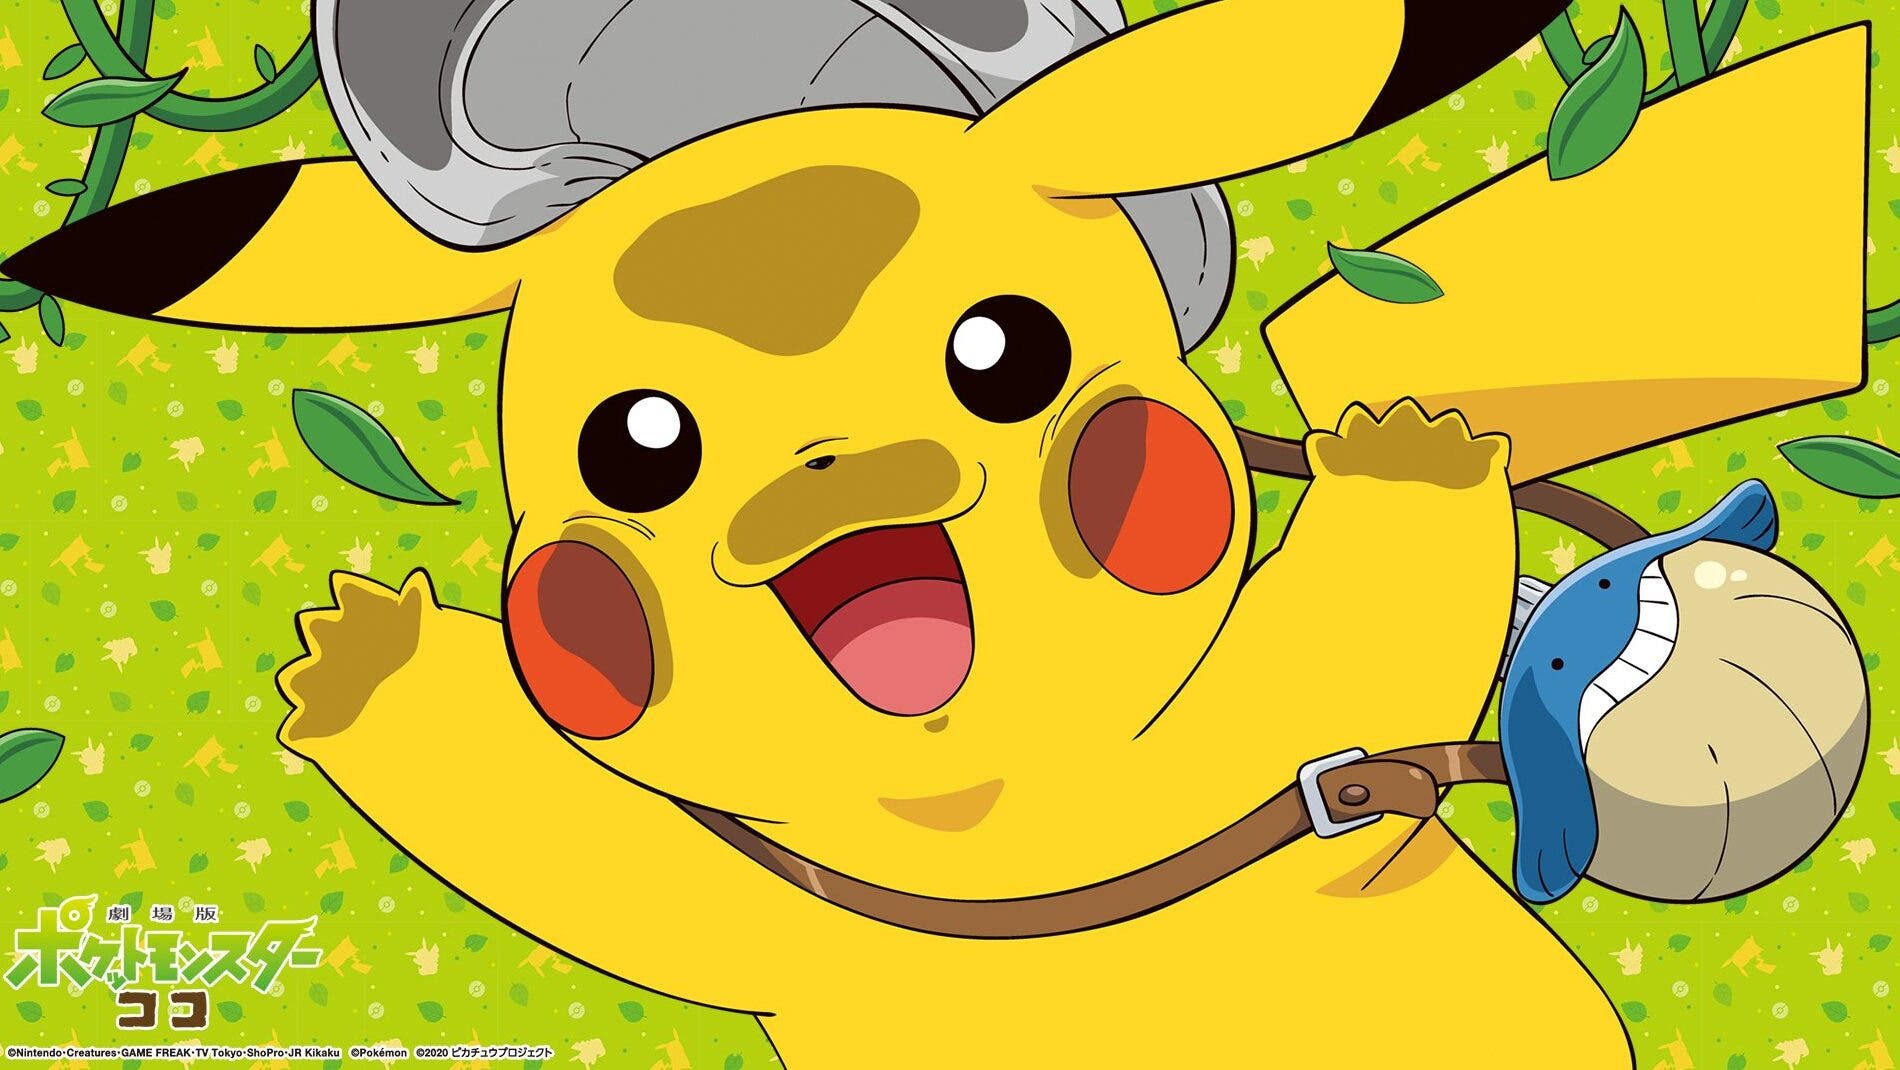 Se comparten fondos de pantalla oficiales de la película Pokémon Coco protagonizados por Pikachu